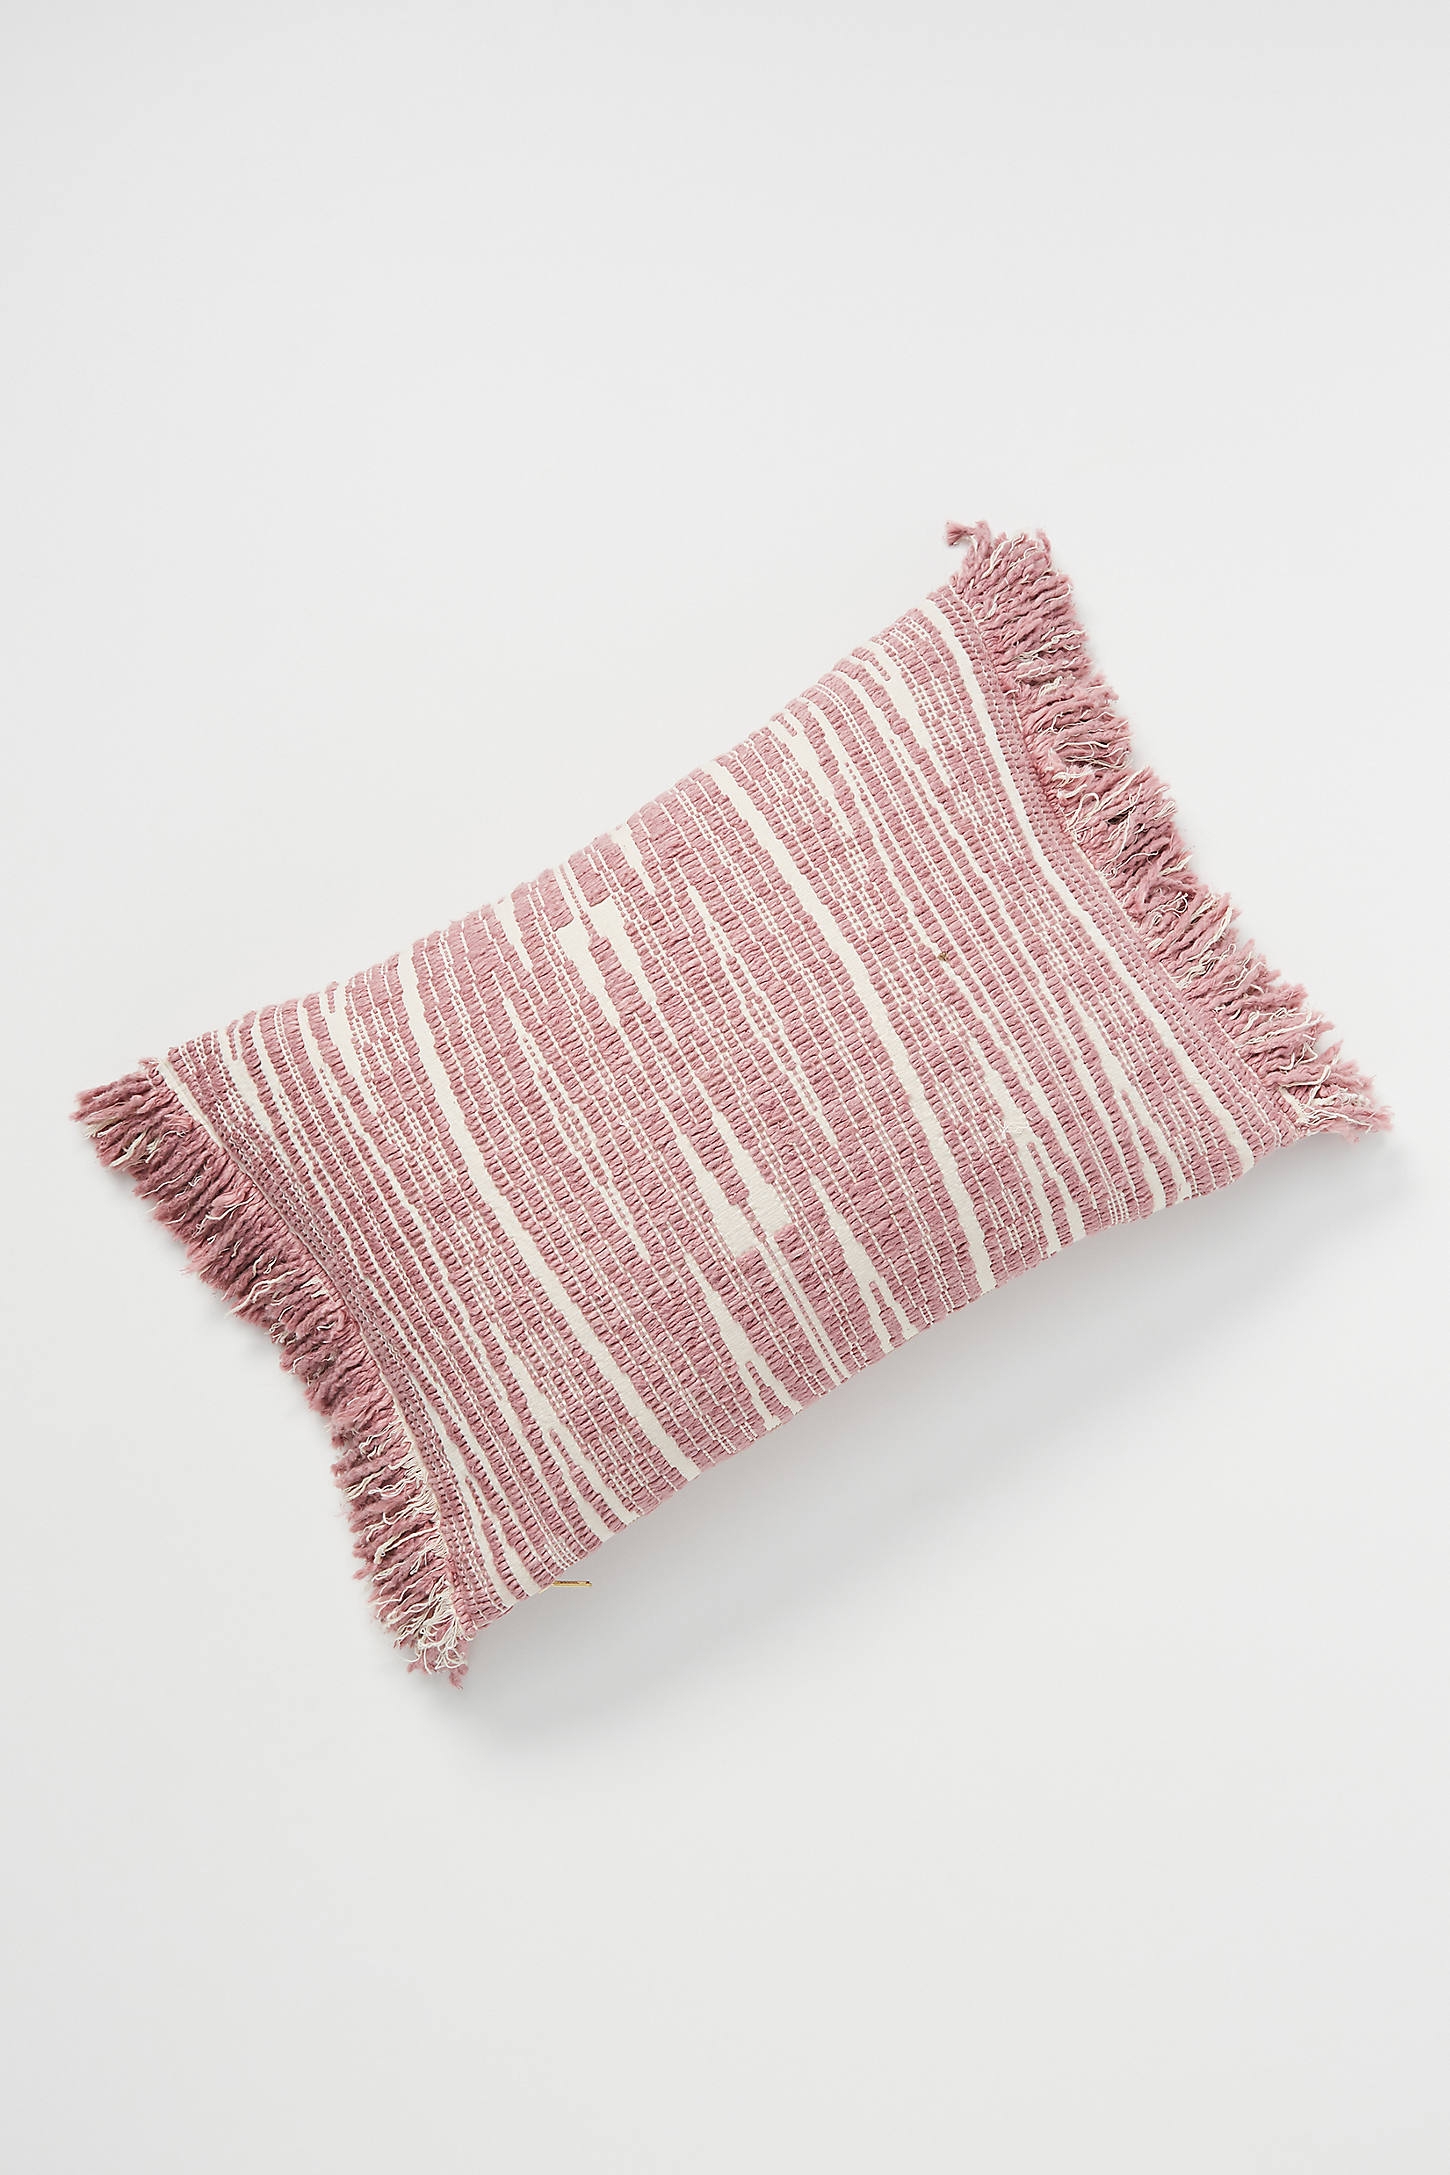 Textured Kadin Pillow - Image 0